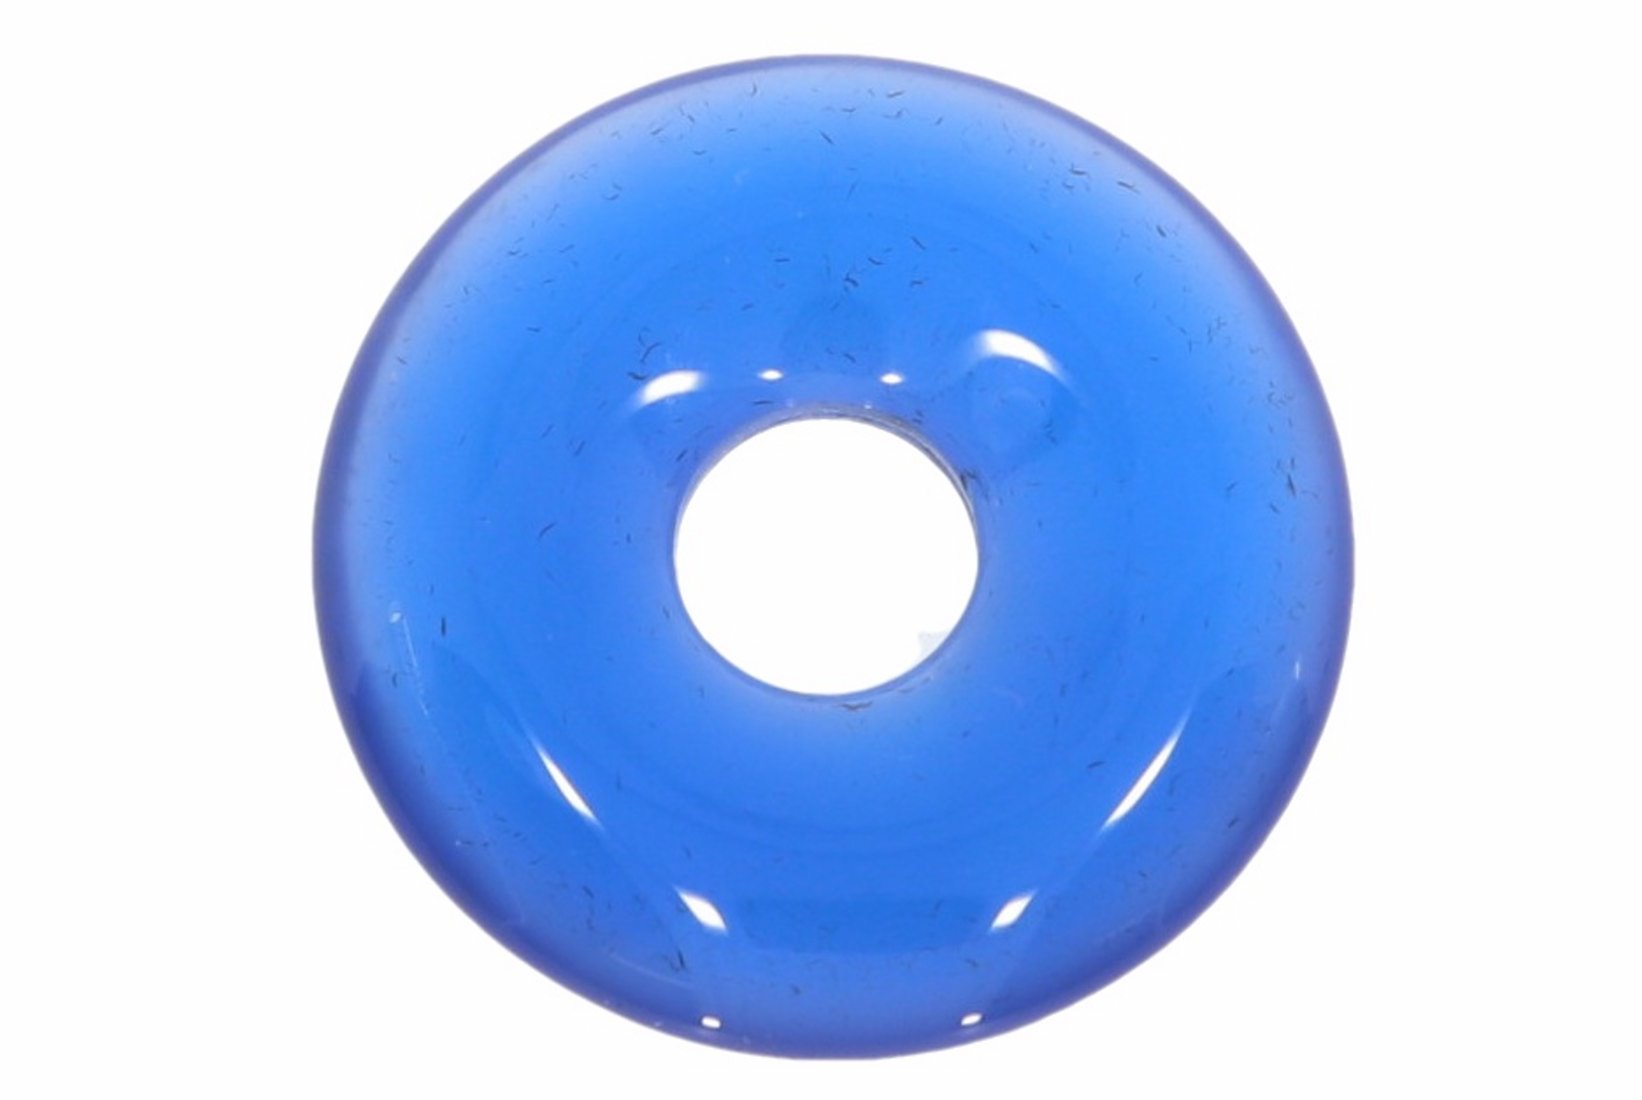 Achat blau Donut Schmuck Anhänger 20mm für's Lederband HS1574